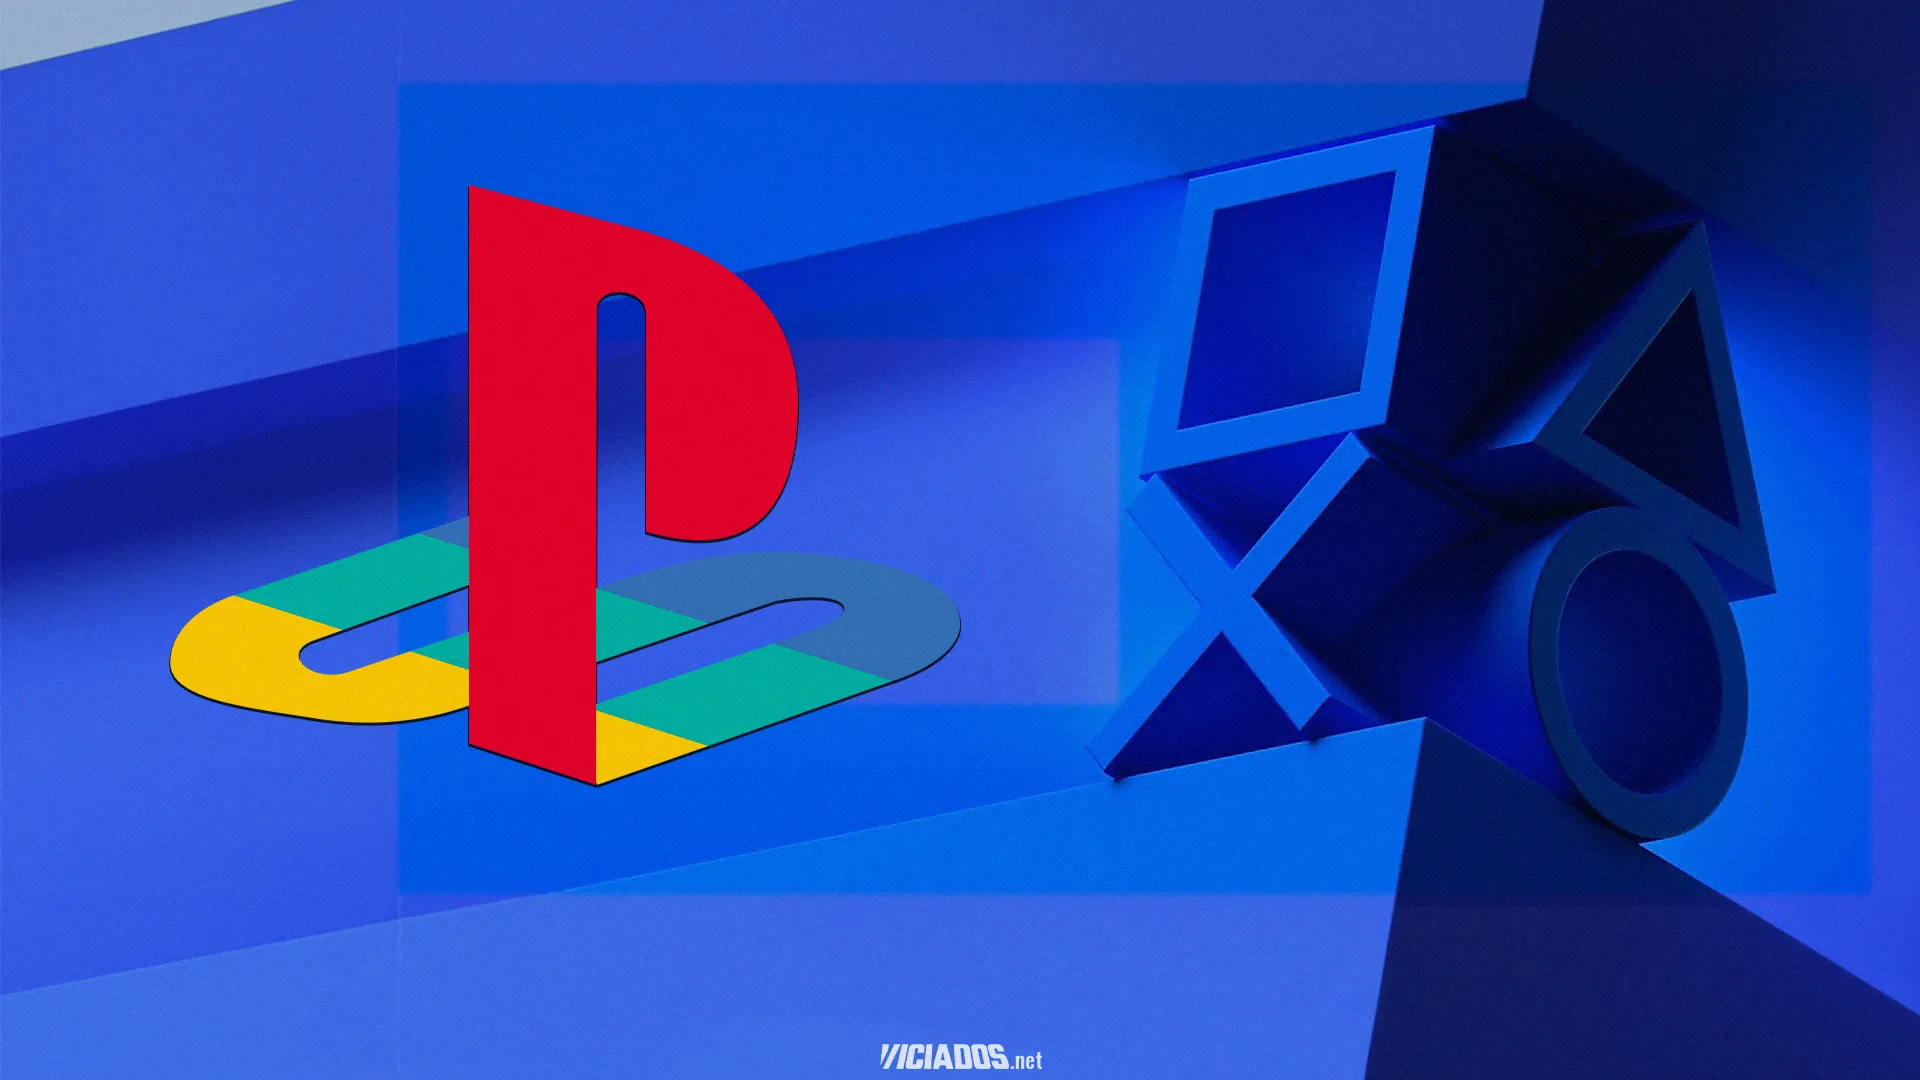 Grande exclusivo de PlayStation vai chegar ao Windows PC no final de 2023 2023 Viciados